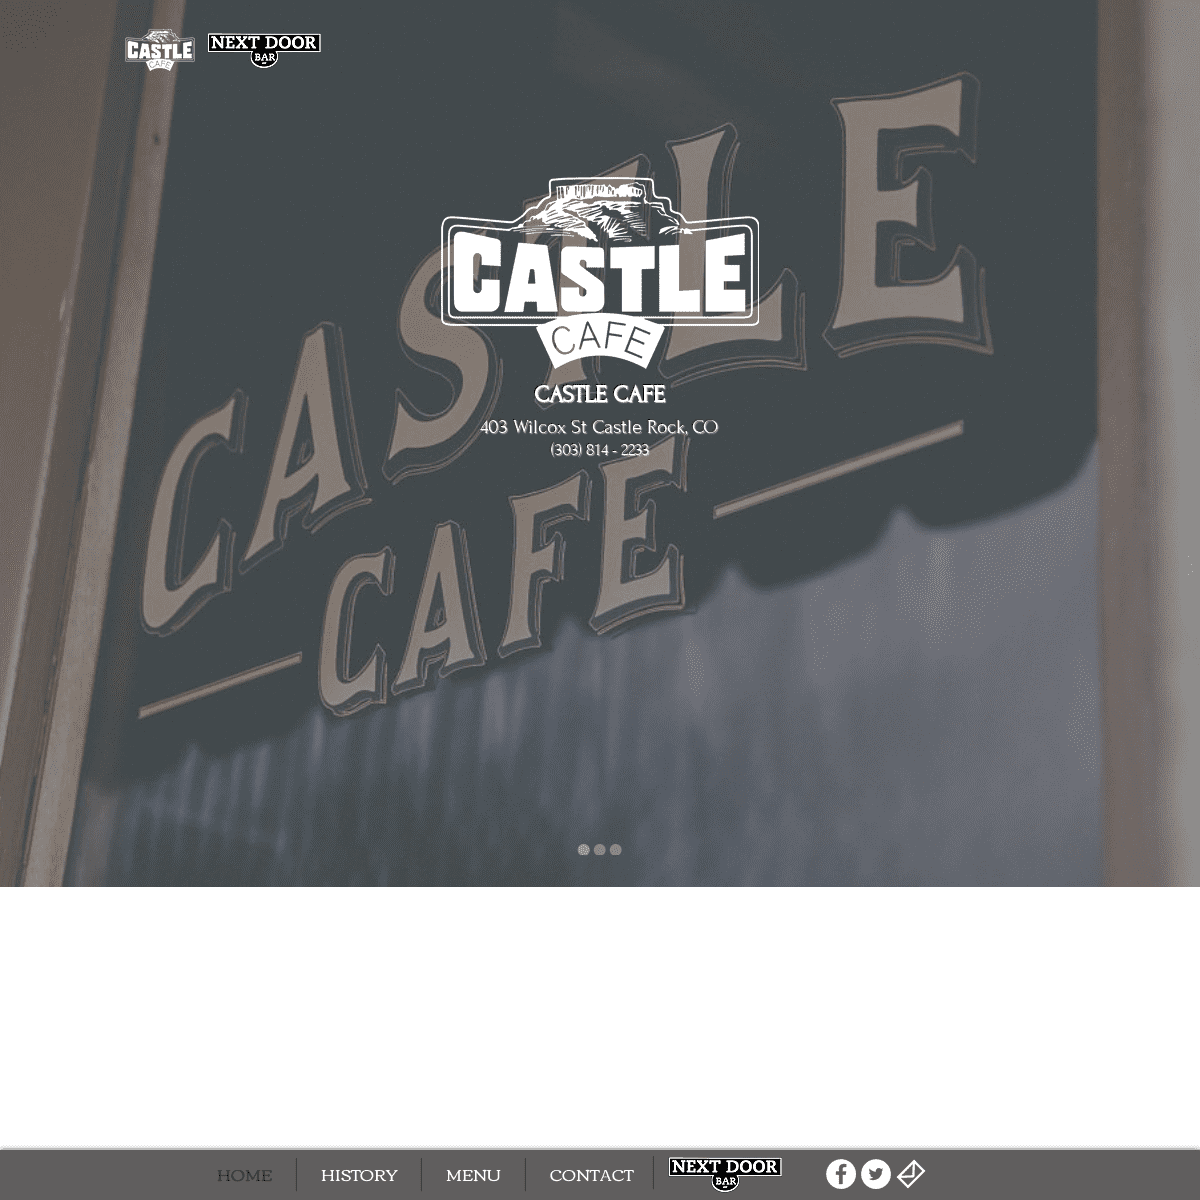 A complete backup of castlecafe.com